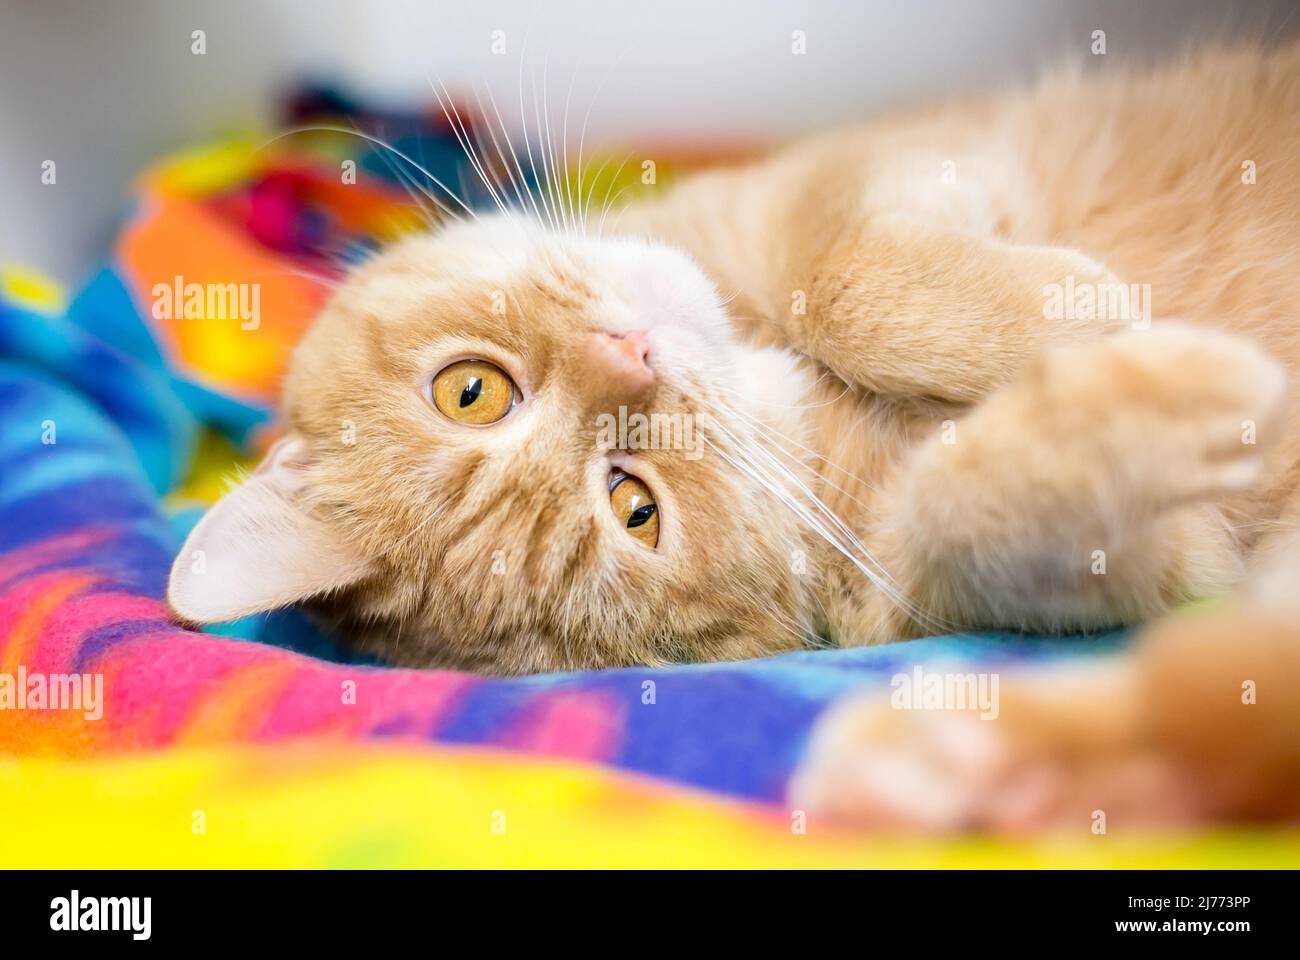 Un lindo gato de jengibre con tabby naranja tumbado boca abajo sobre una manta colorida Foto de stock